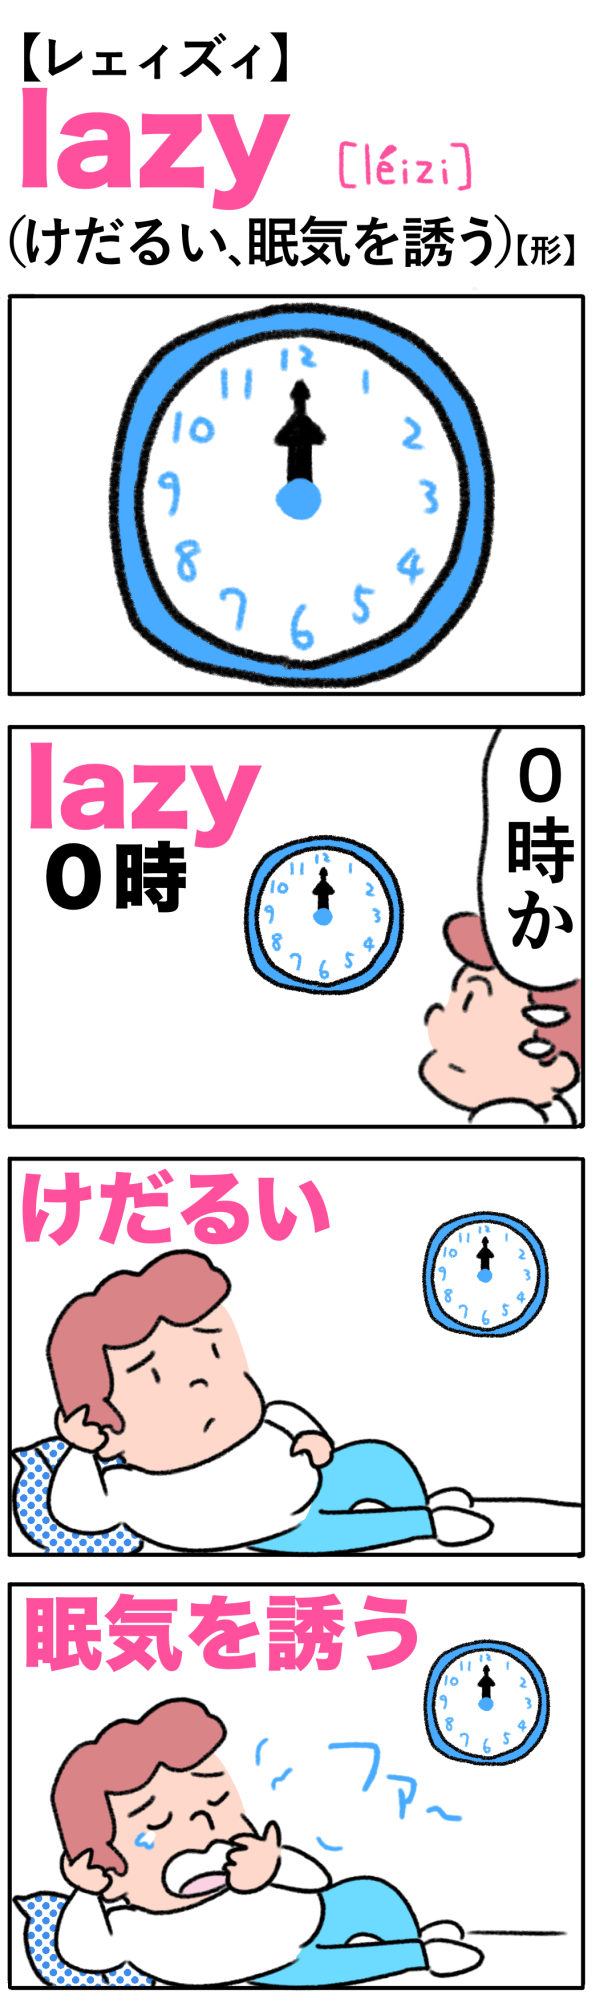 lazy（けだるい、眠気を誘う）の語呂合わせ英単語